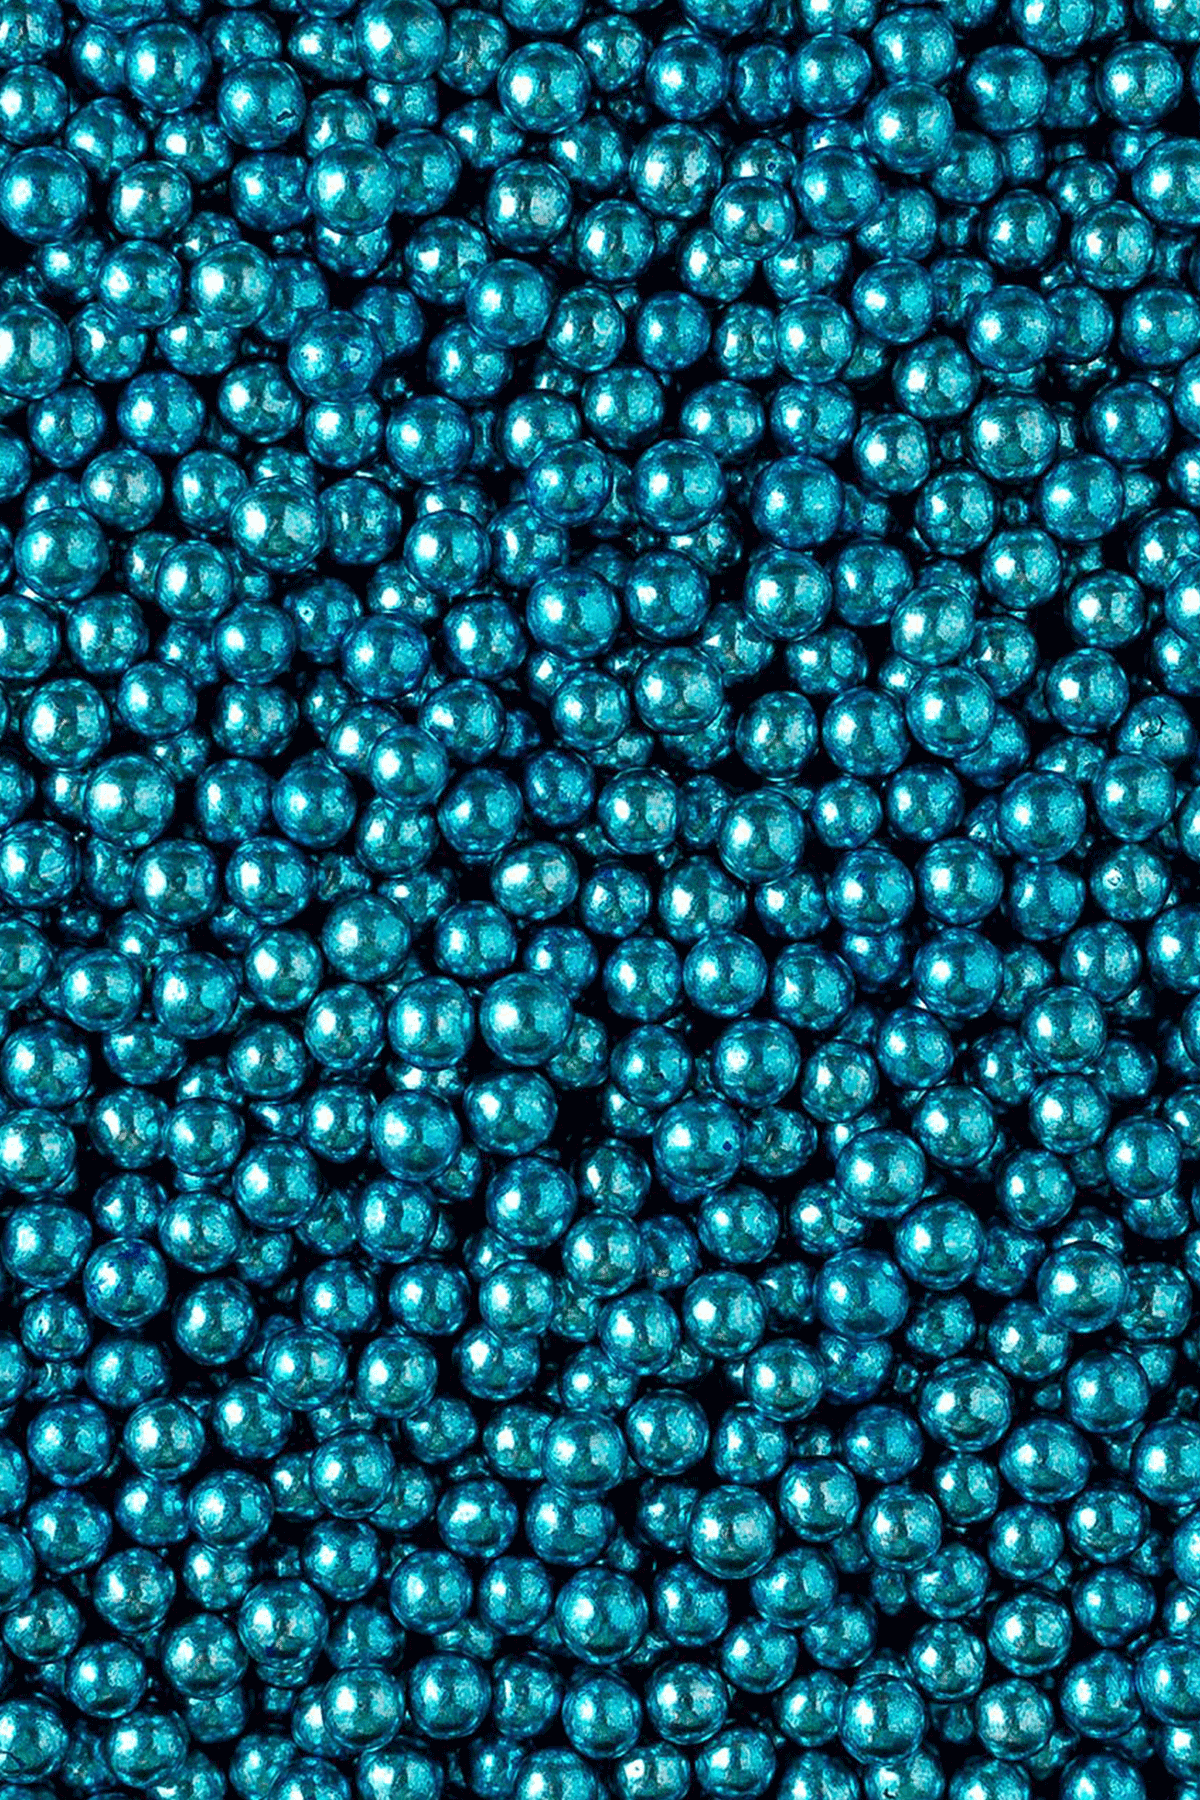 Metallic Pearls - Blue 6mm Sprinkles Sprinkly